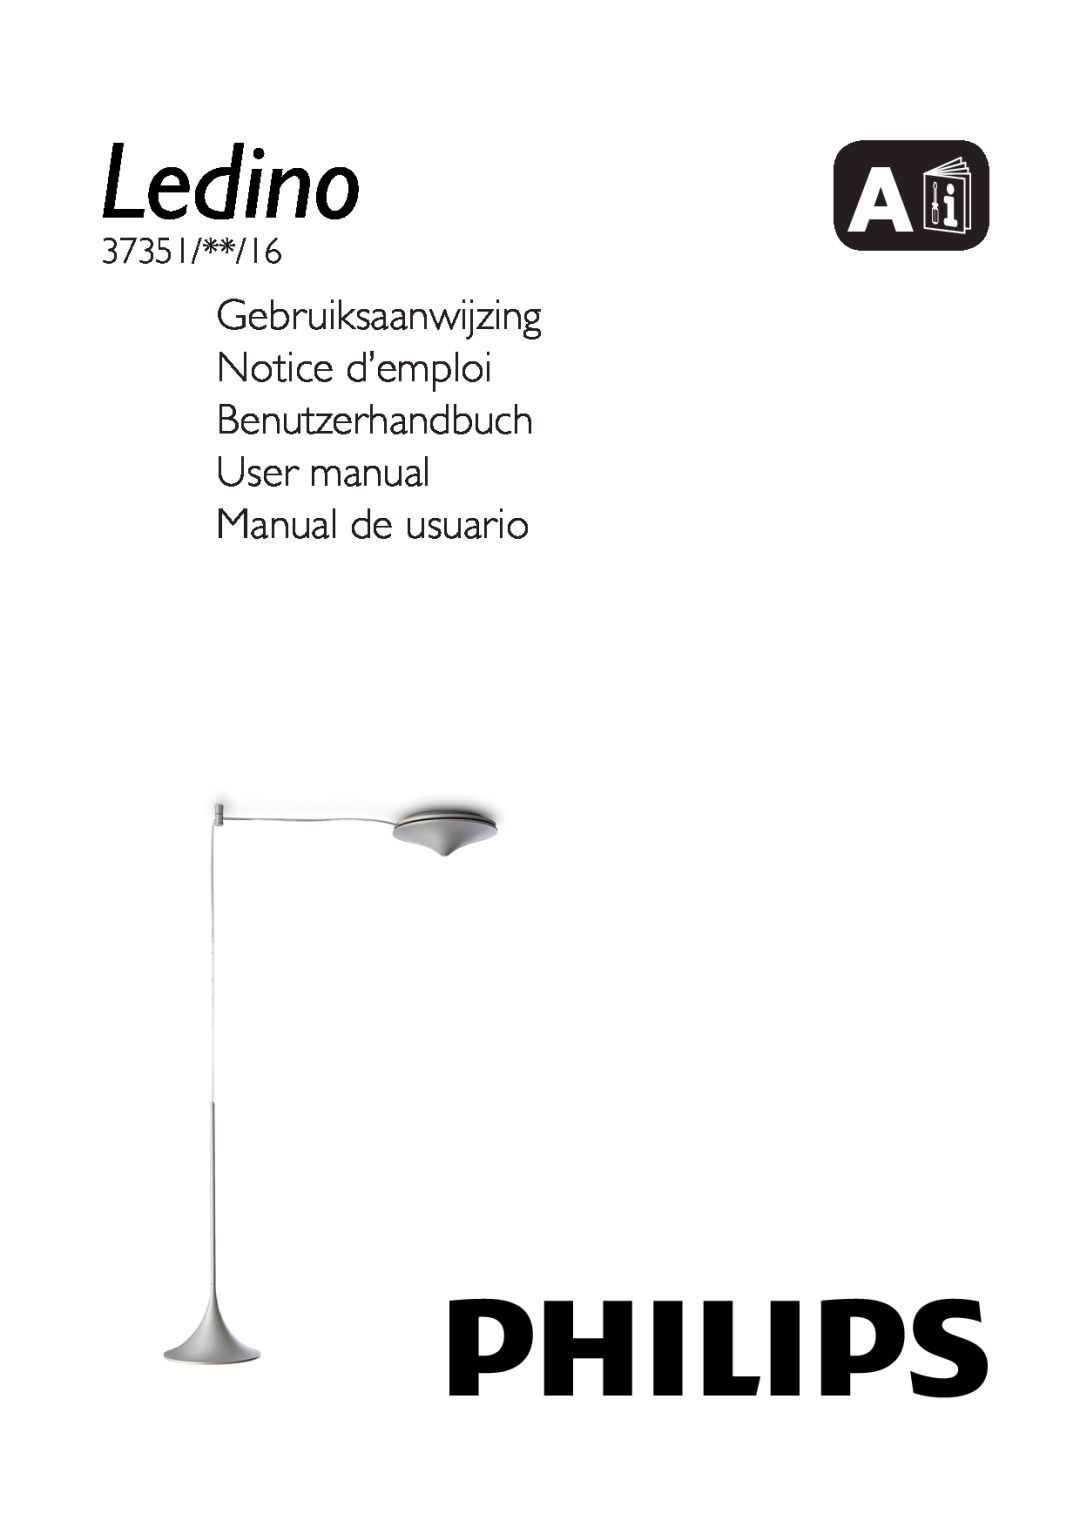 Philips user manual Gebruiksaanwijzing Notice d’emploi, Benutzerhandbuch User manual Manual de usuario, 37351/**/16 